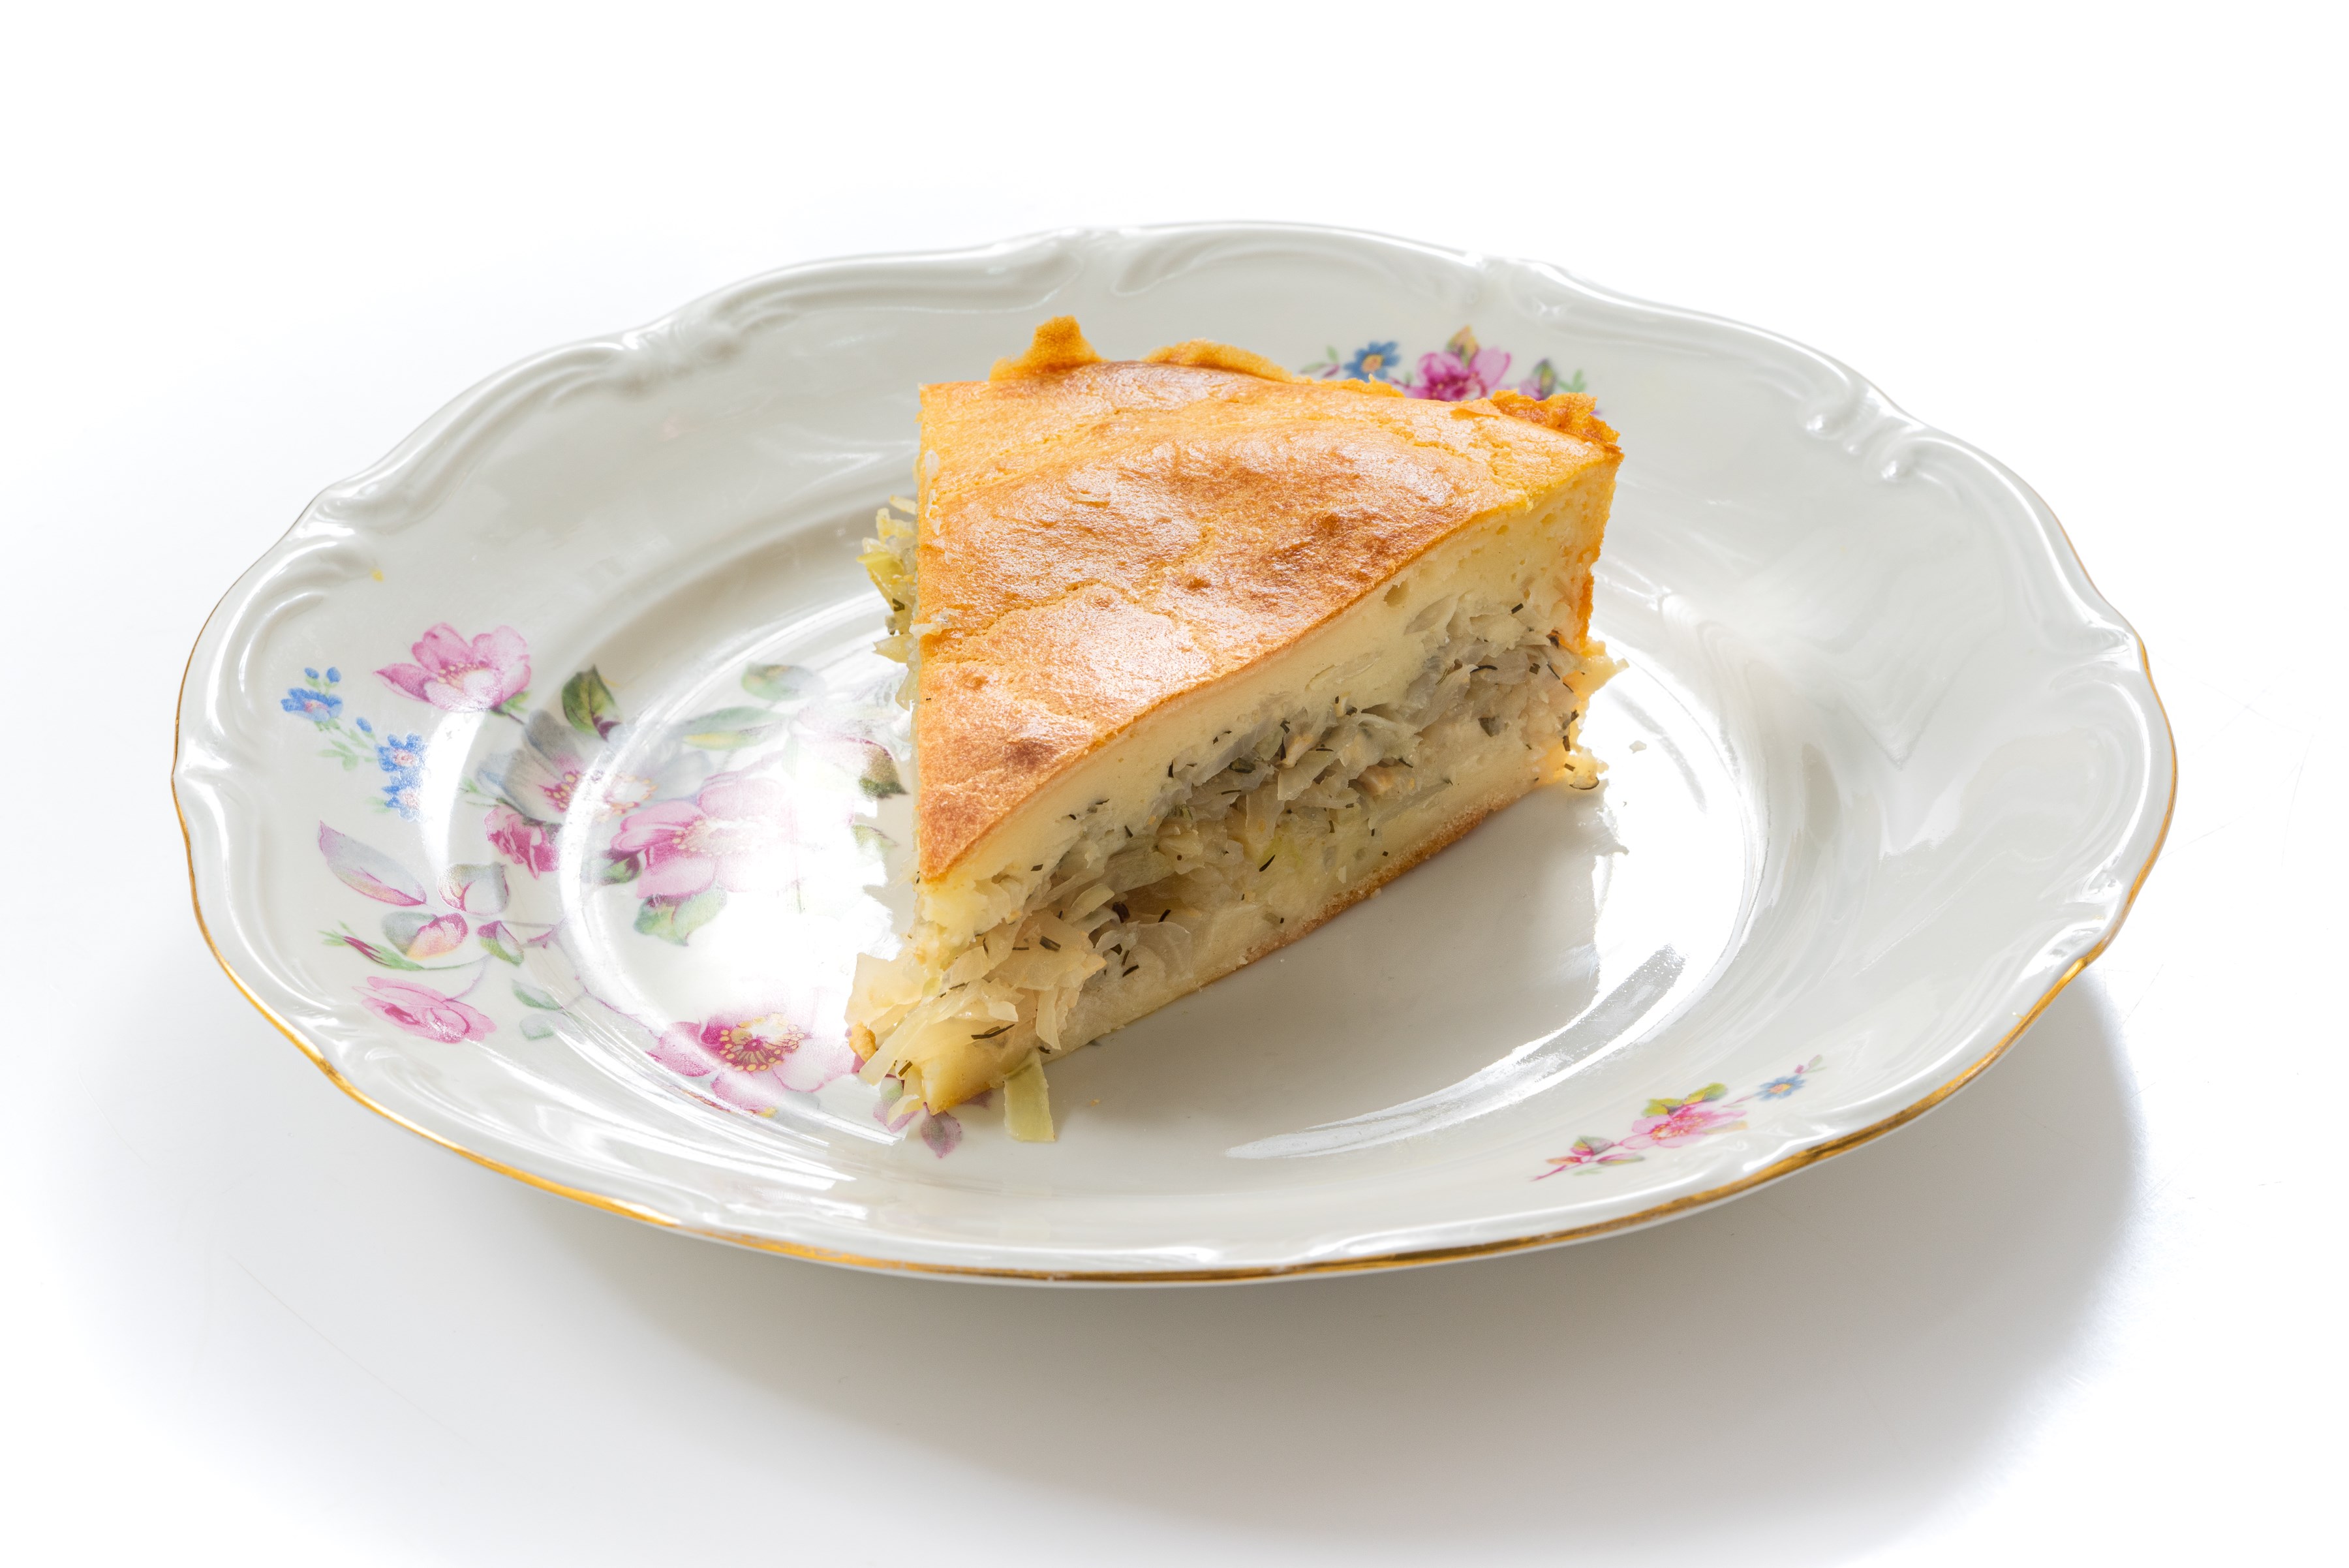 Вкусный заливной пирог – быстрый рецепт на кефире с разными начинками в духовке и в мультиварке